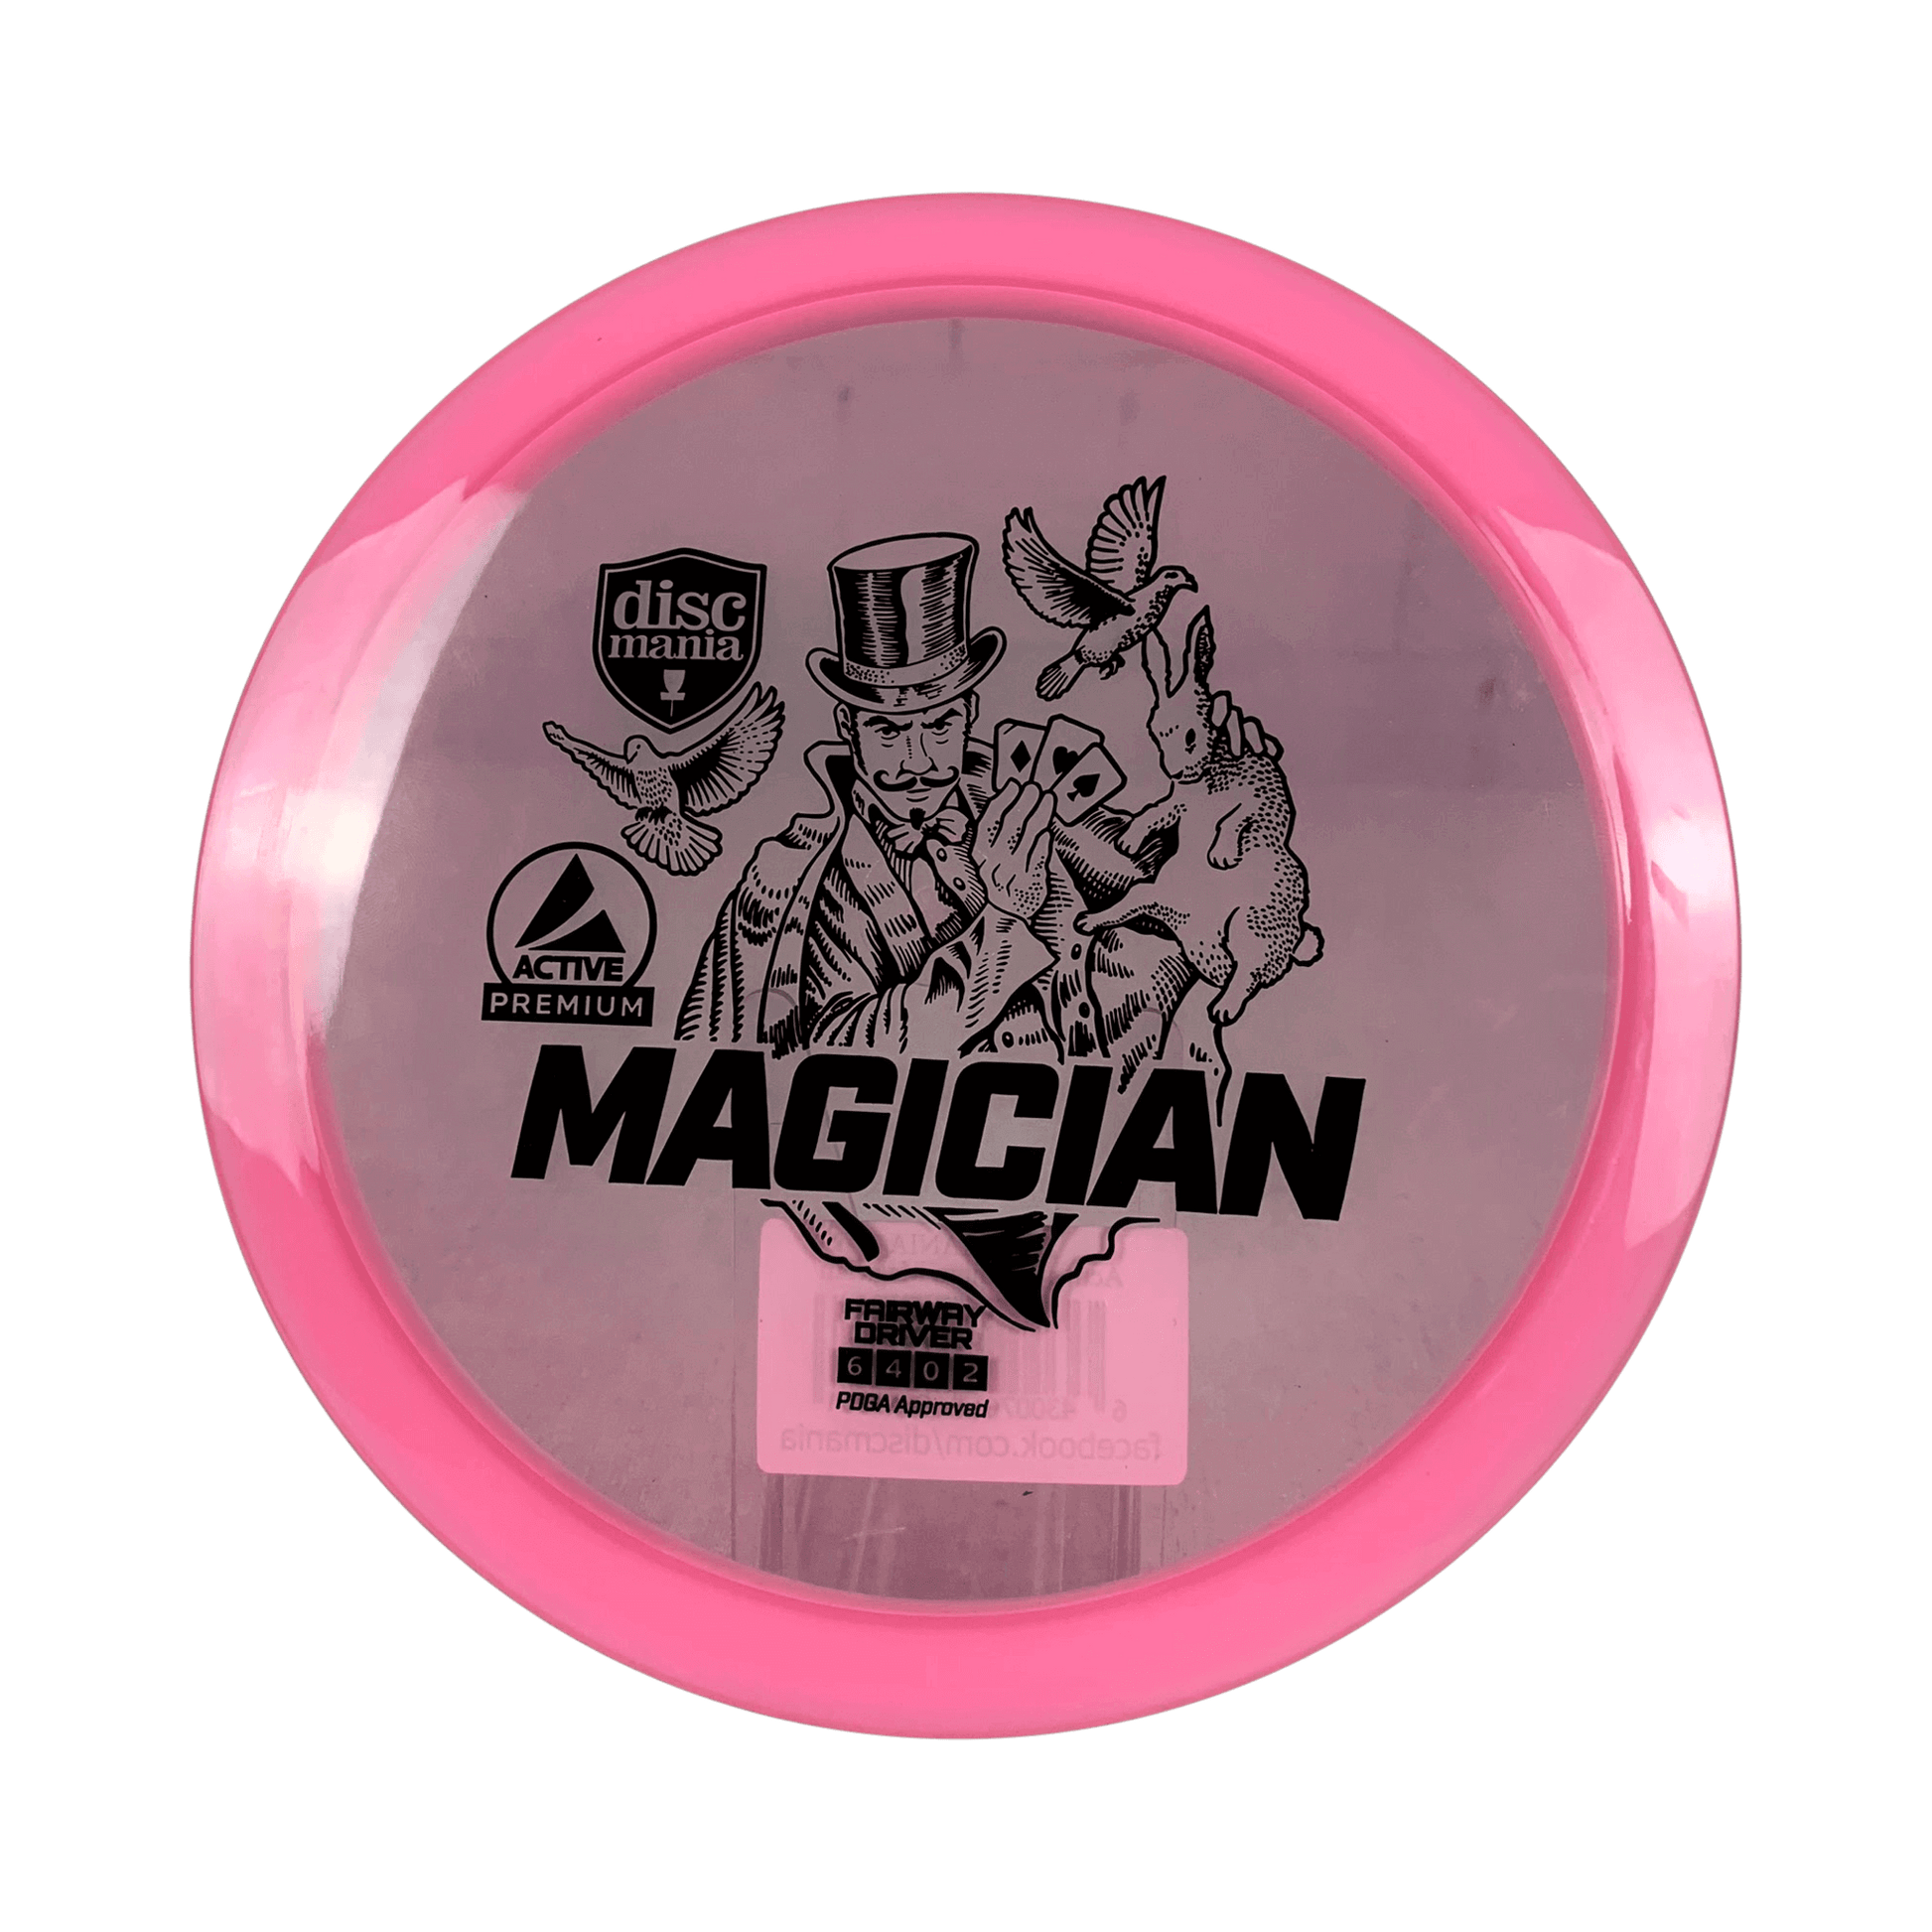 Active Premium Magician Disc Discmania pink 174 